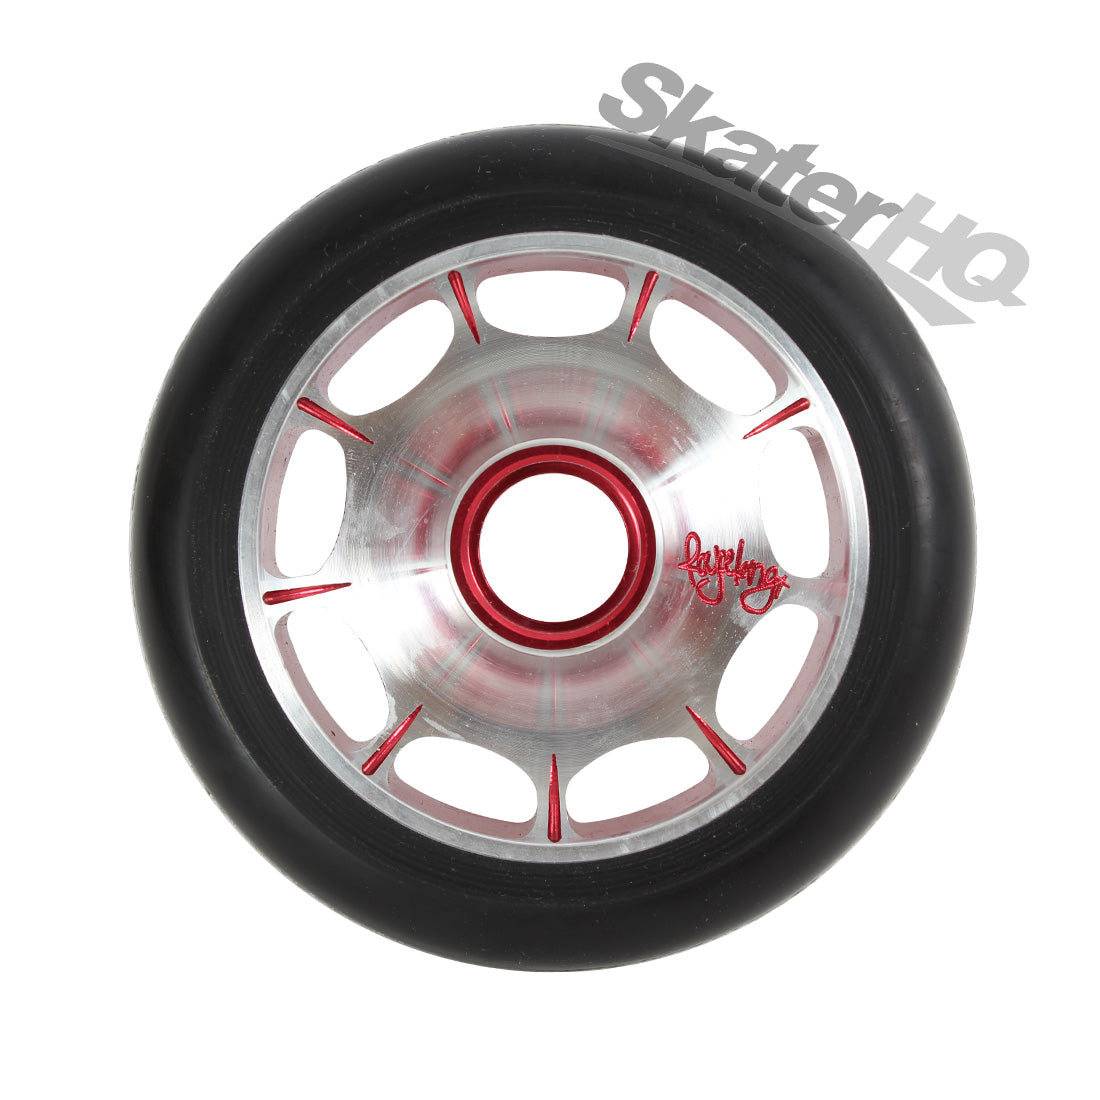 Root Industries Royce King Sig Wheel 110mm - Black/Red Scooter Wheels